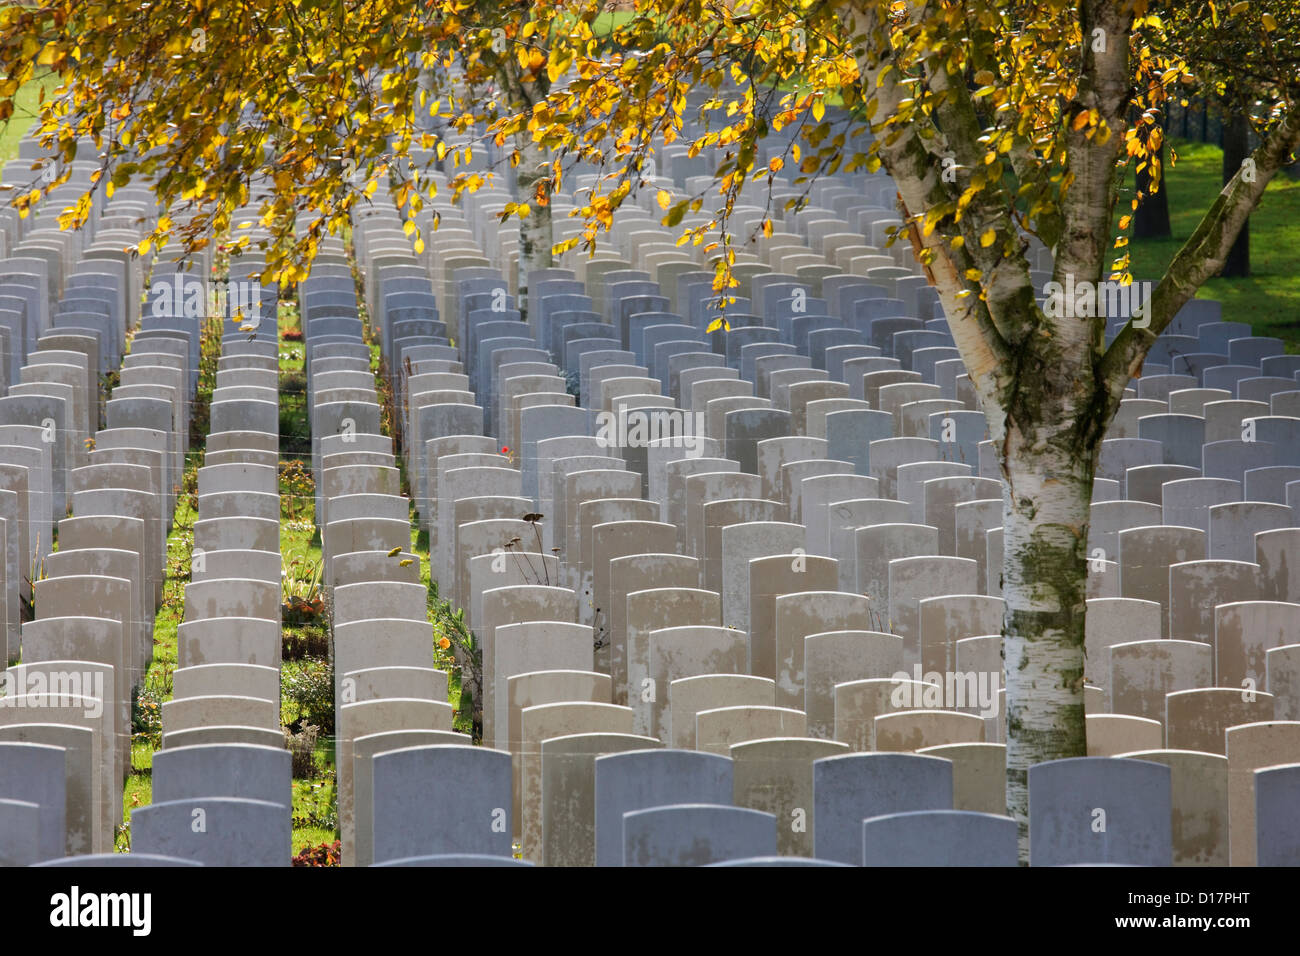 Hooge cratere cimitero, Commissione delle tombe di guerra del Commonwealth sepoltura per la prima guerra mondiale i soldati britannici, Zillebeke, Belgio Foto Stock